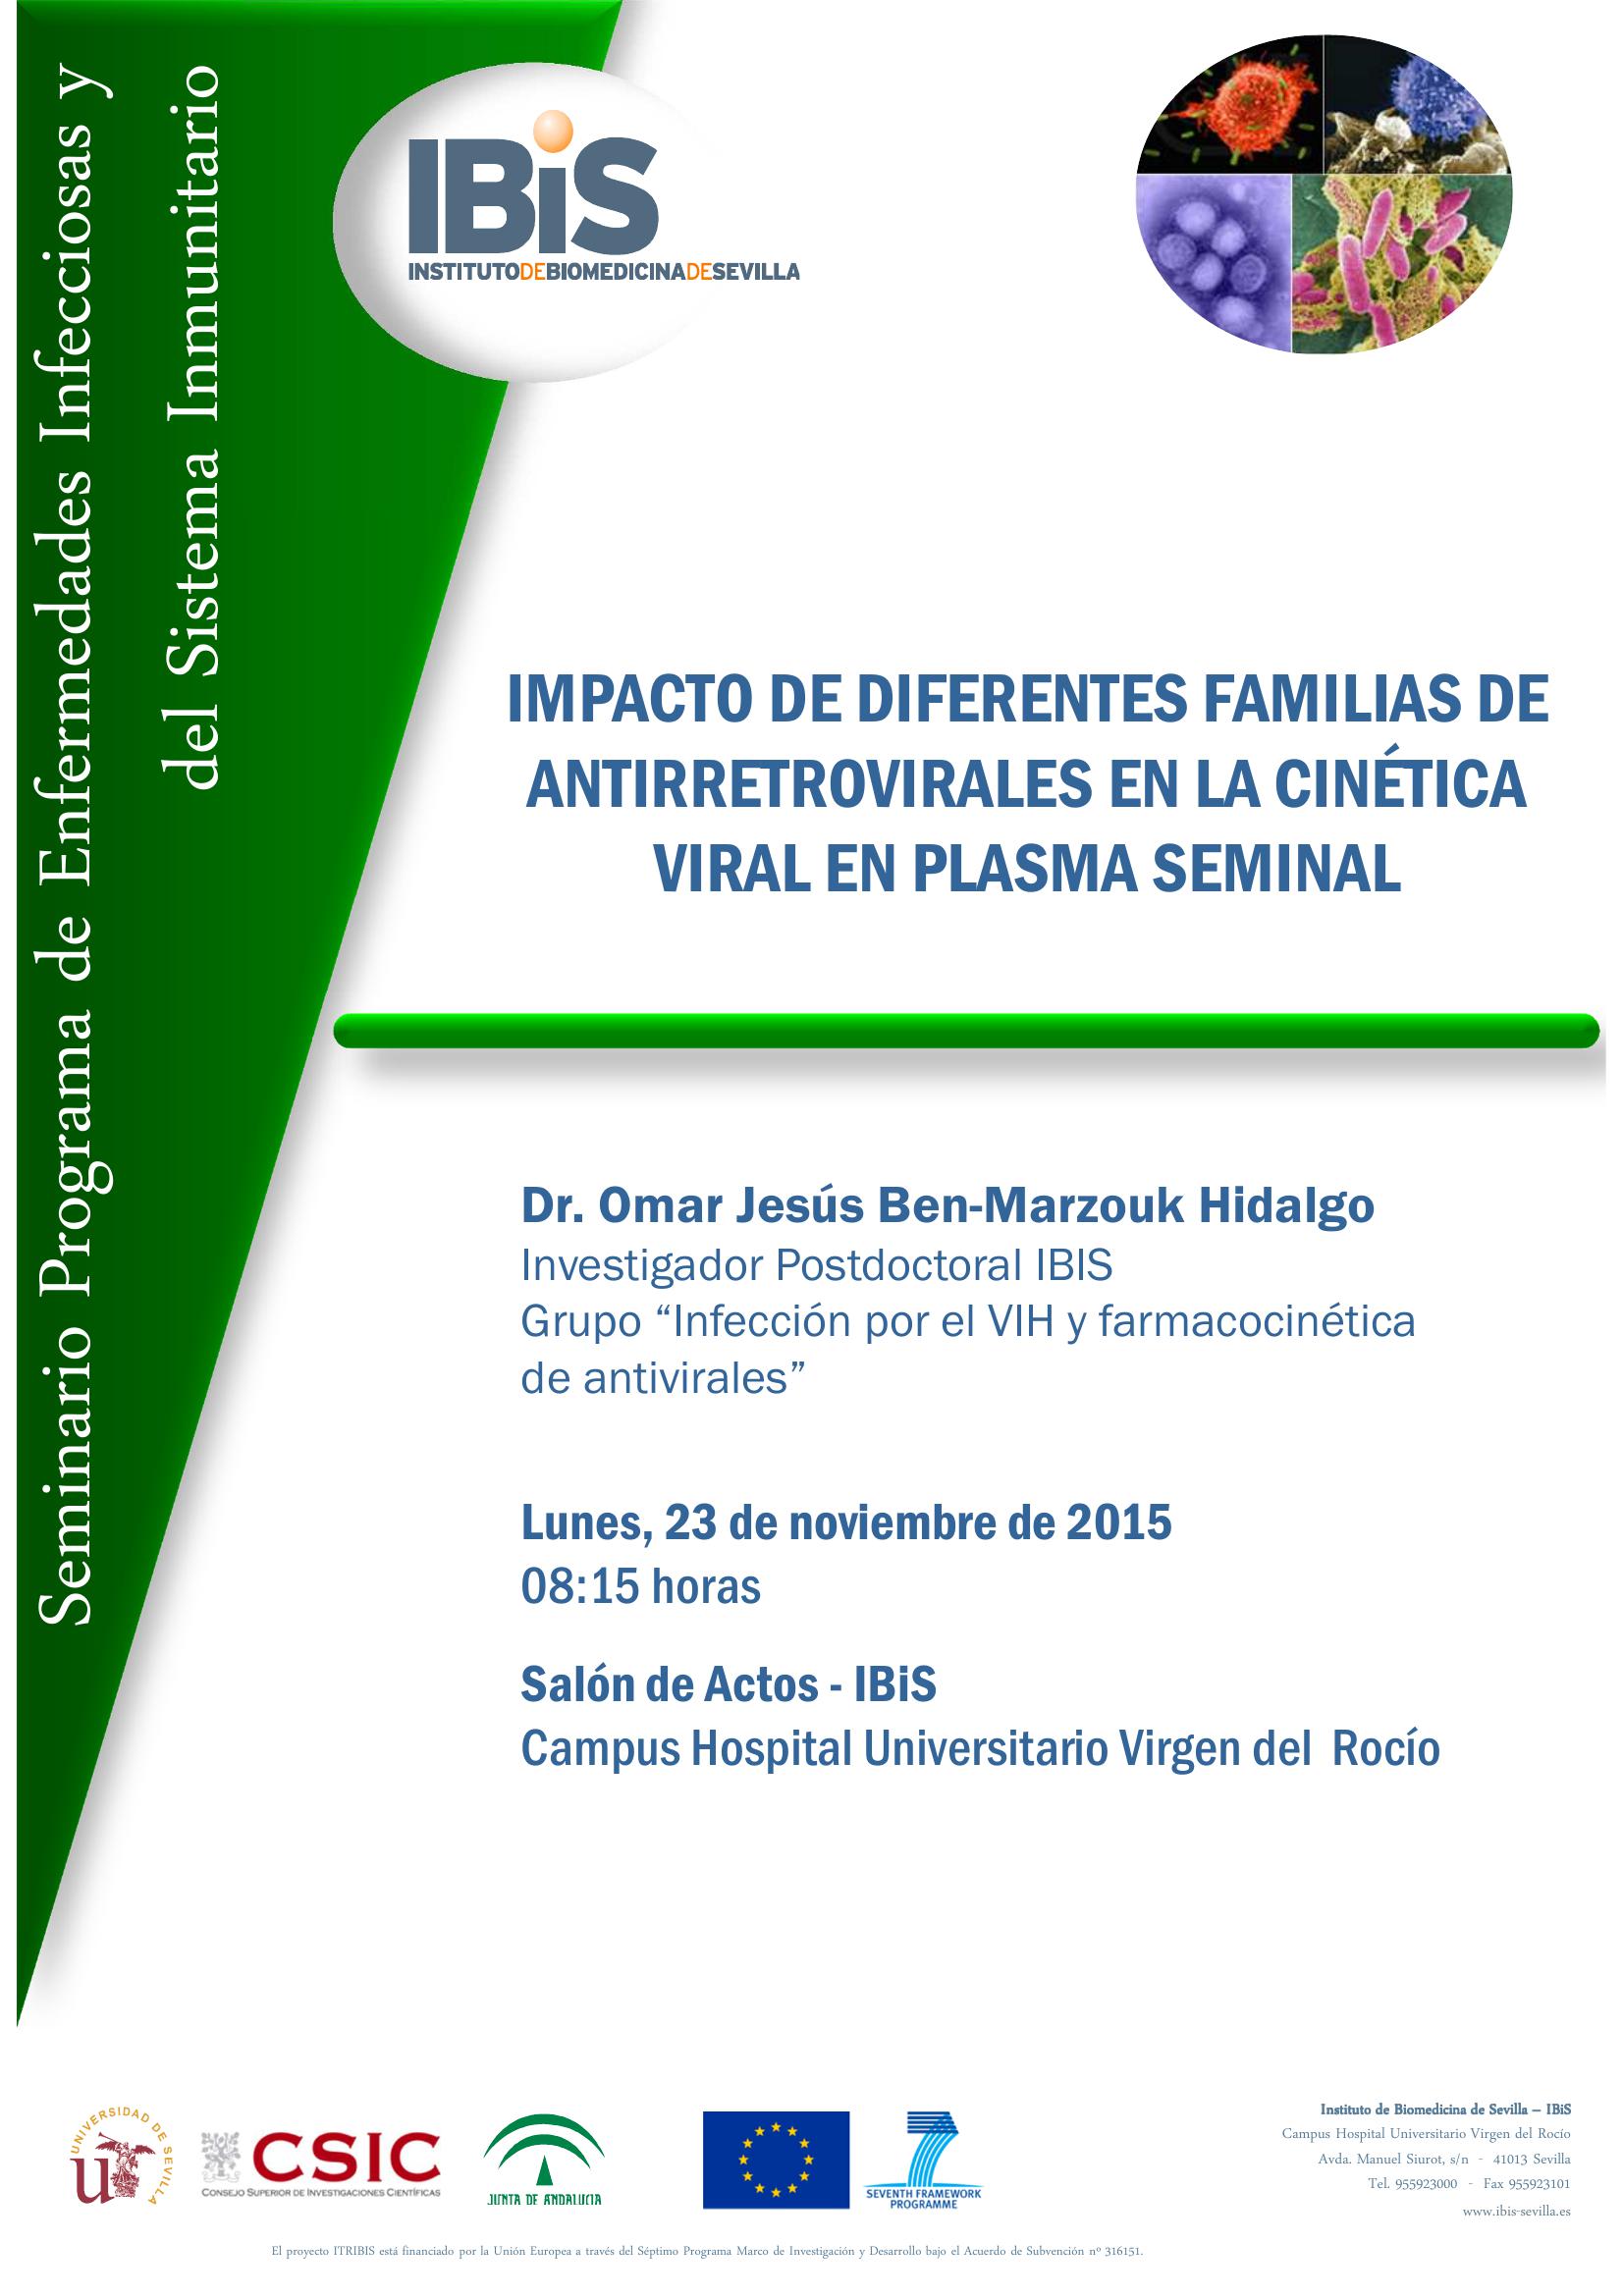 Poster: IMPACTO DE DIFERENTES FAMILIAS DE ANTIRRETROVIRALES EN LA CINÉTICA VIRAL EN PLASMA SEMINAL